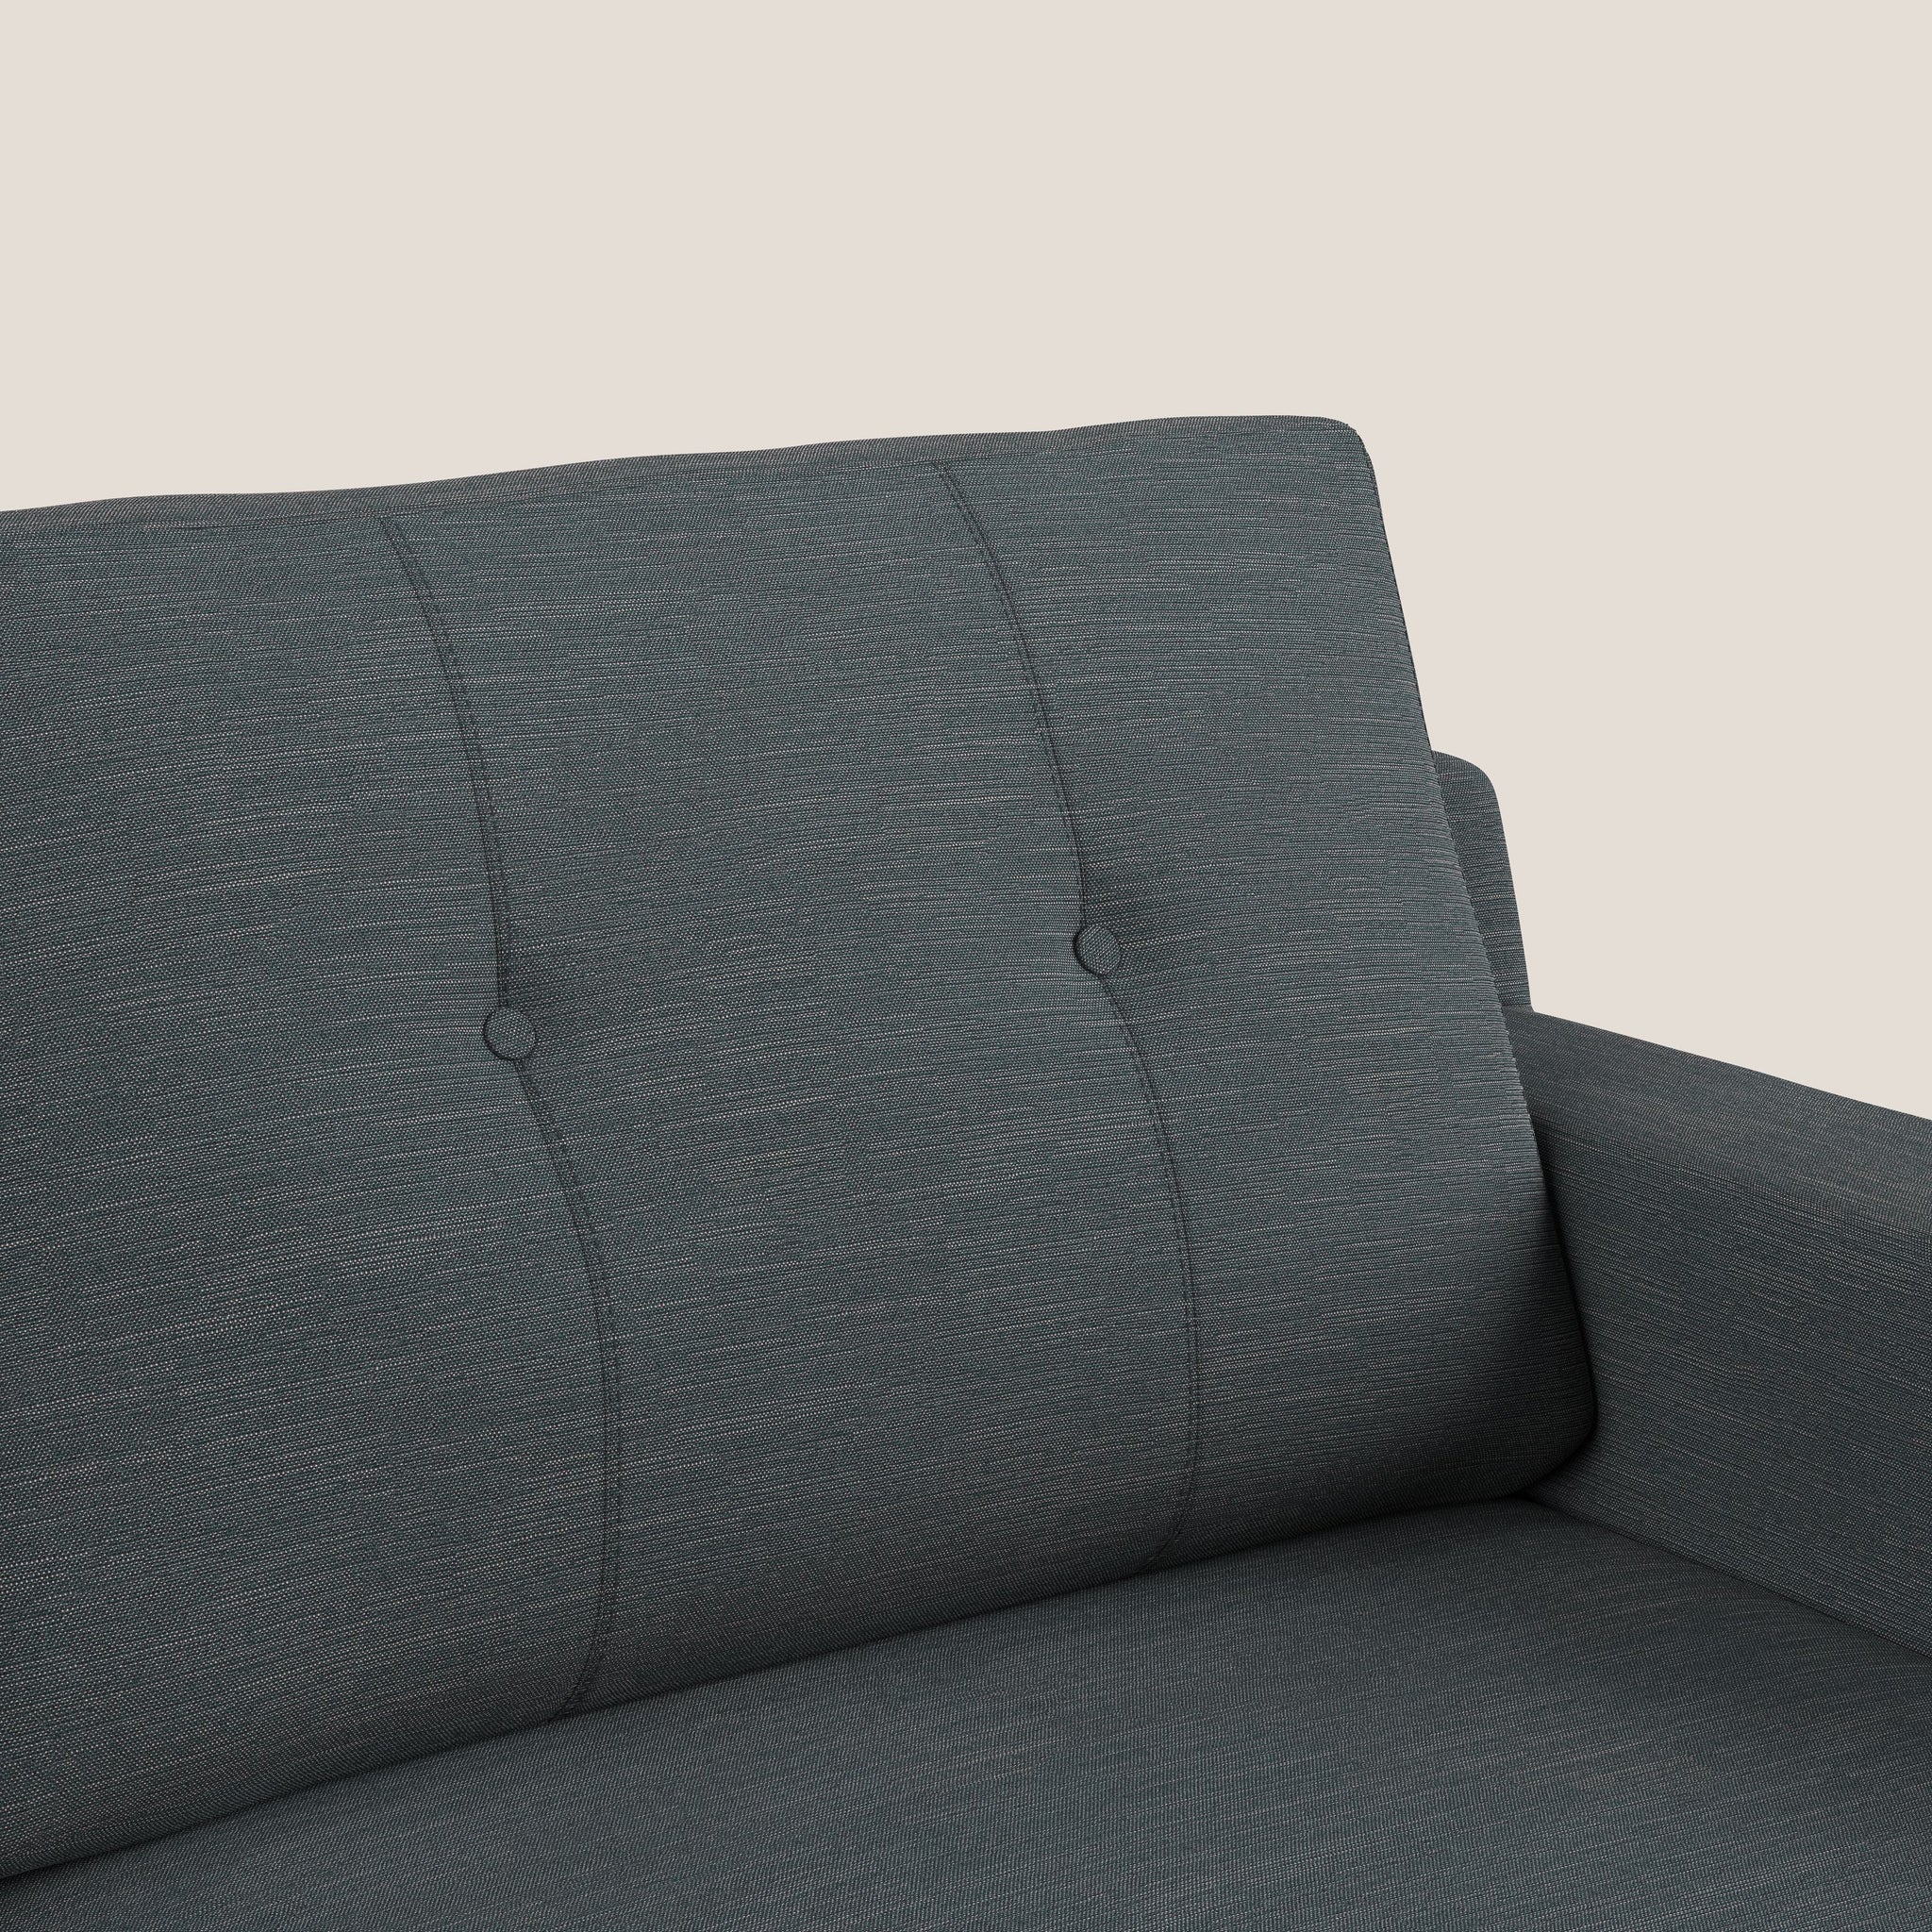 Danish divano angolare reversibile in tessuto ecosostenibile T10